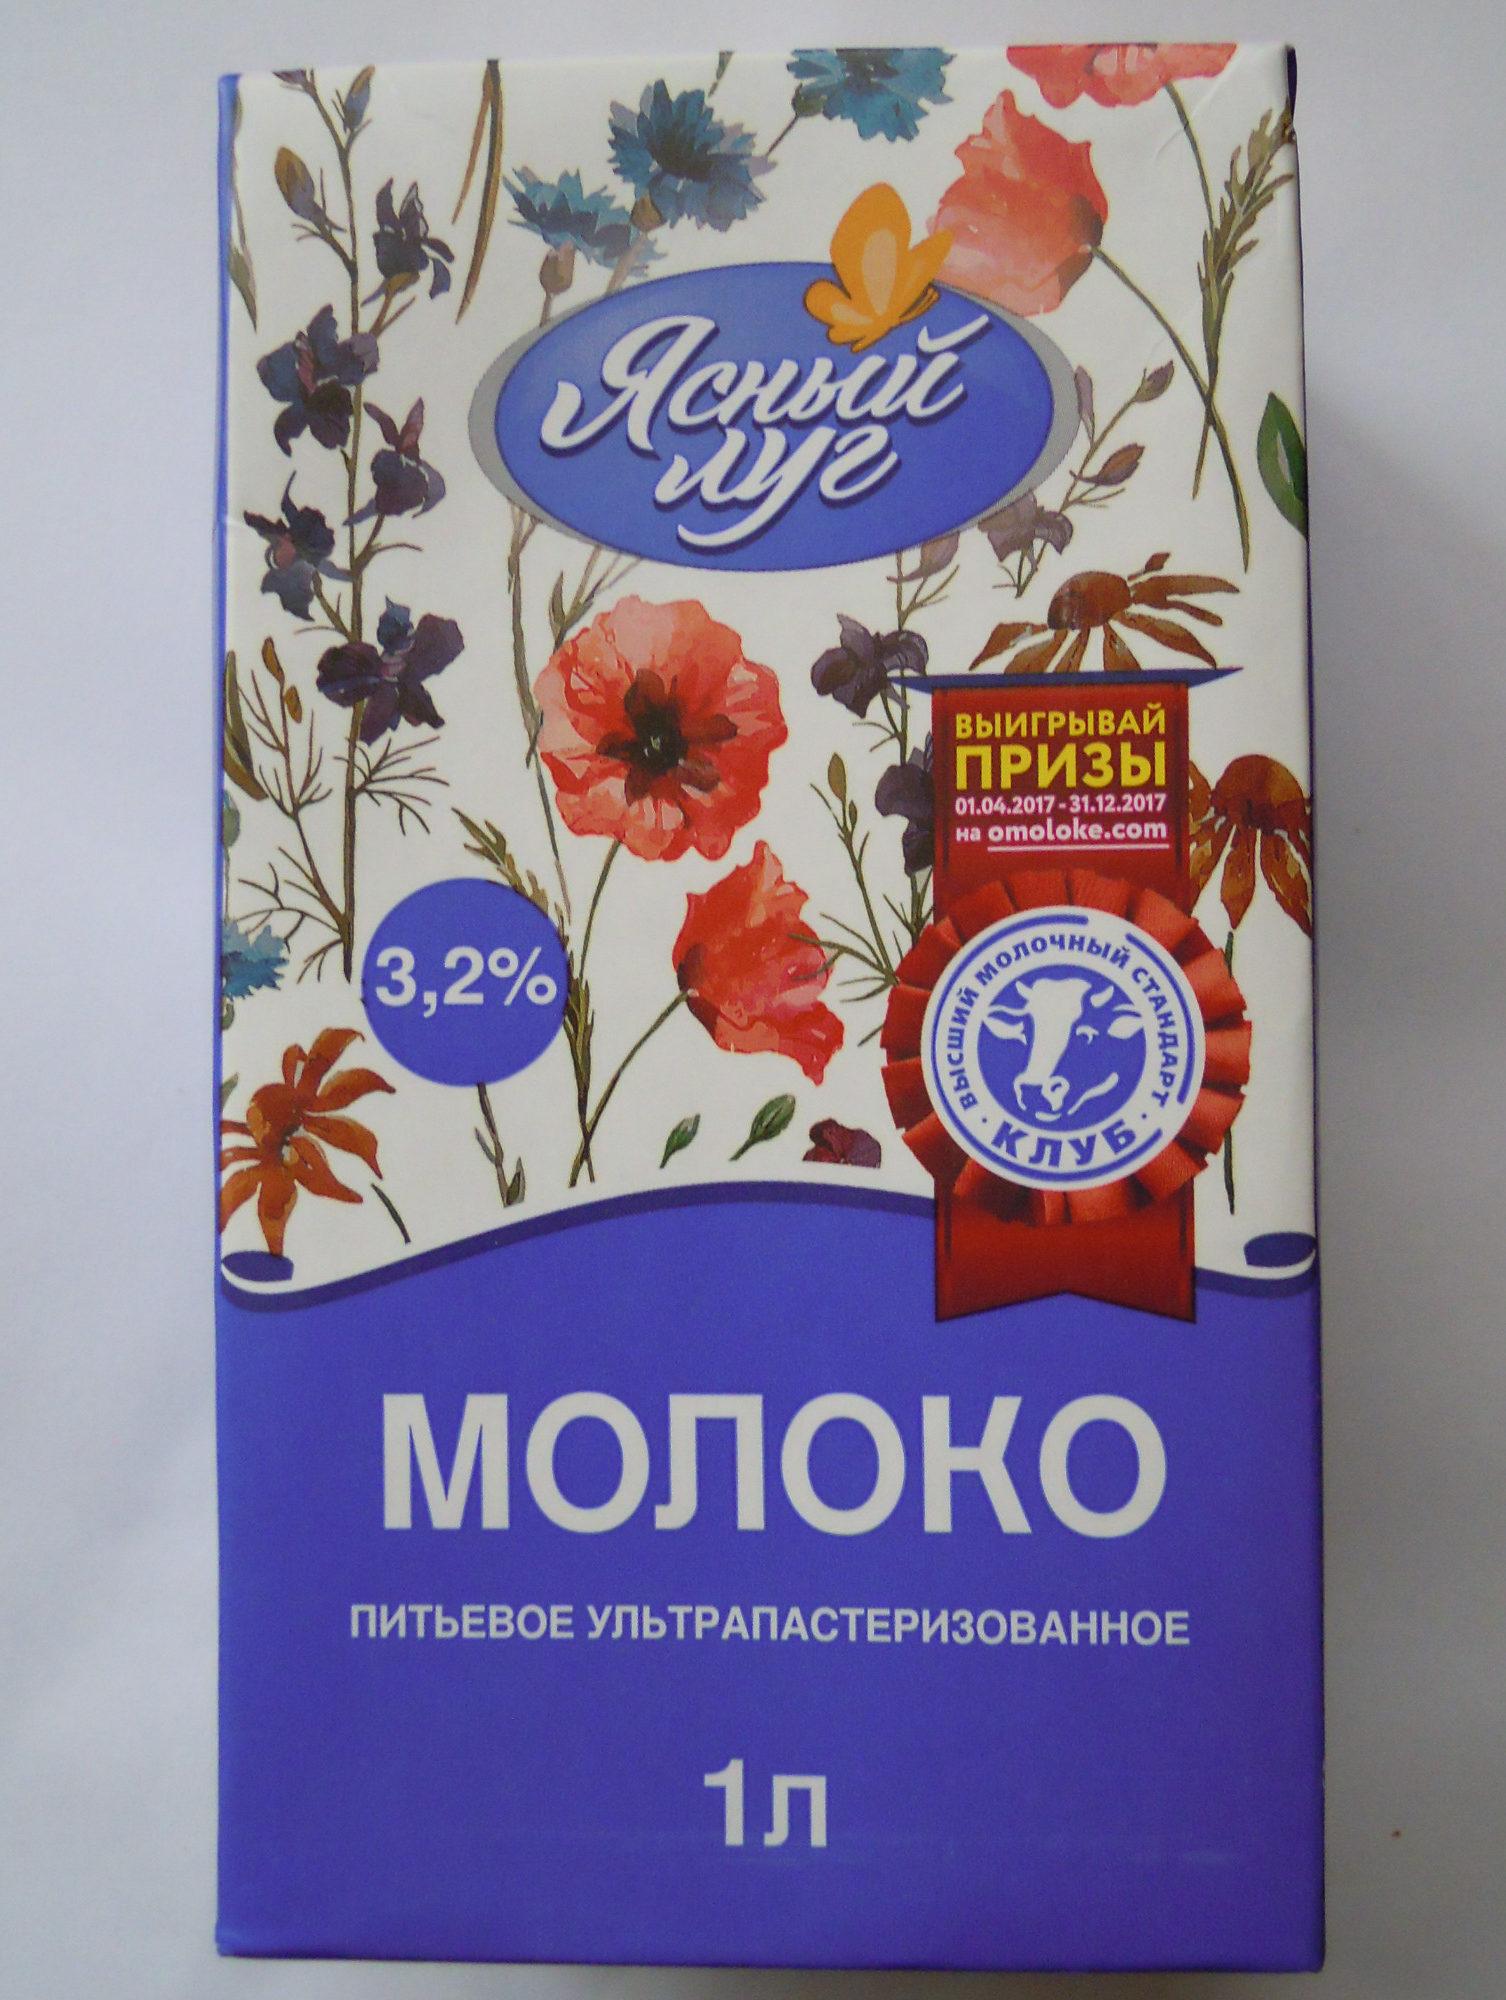 Молоко питьевое ультрапастеризованное 3,2 % - Product - ru